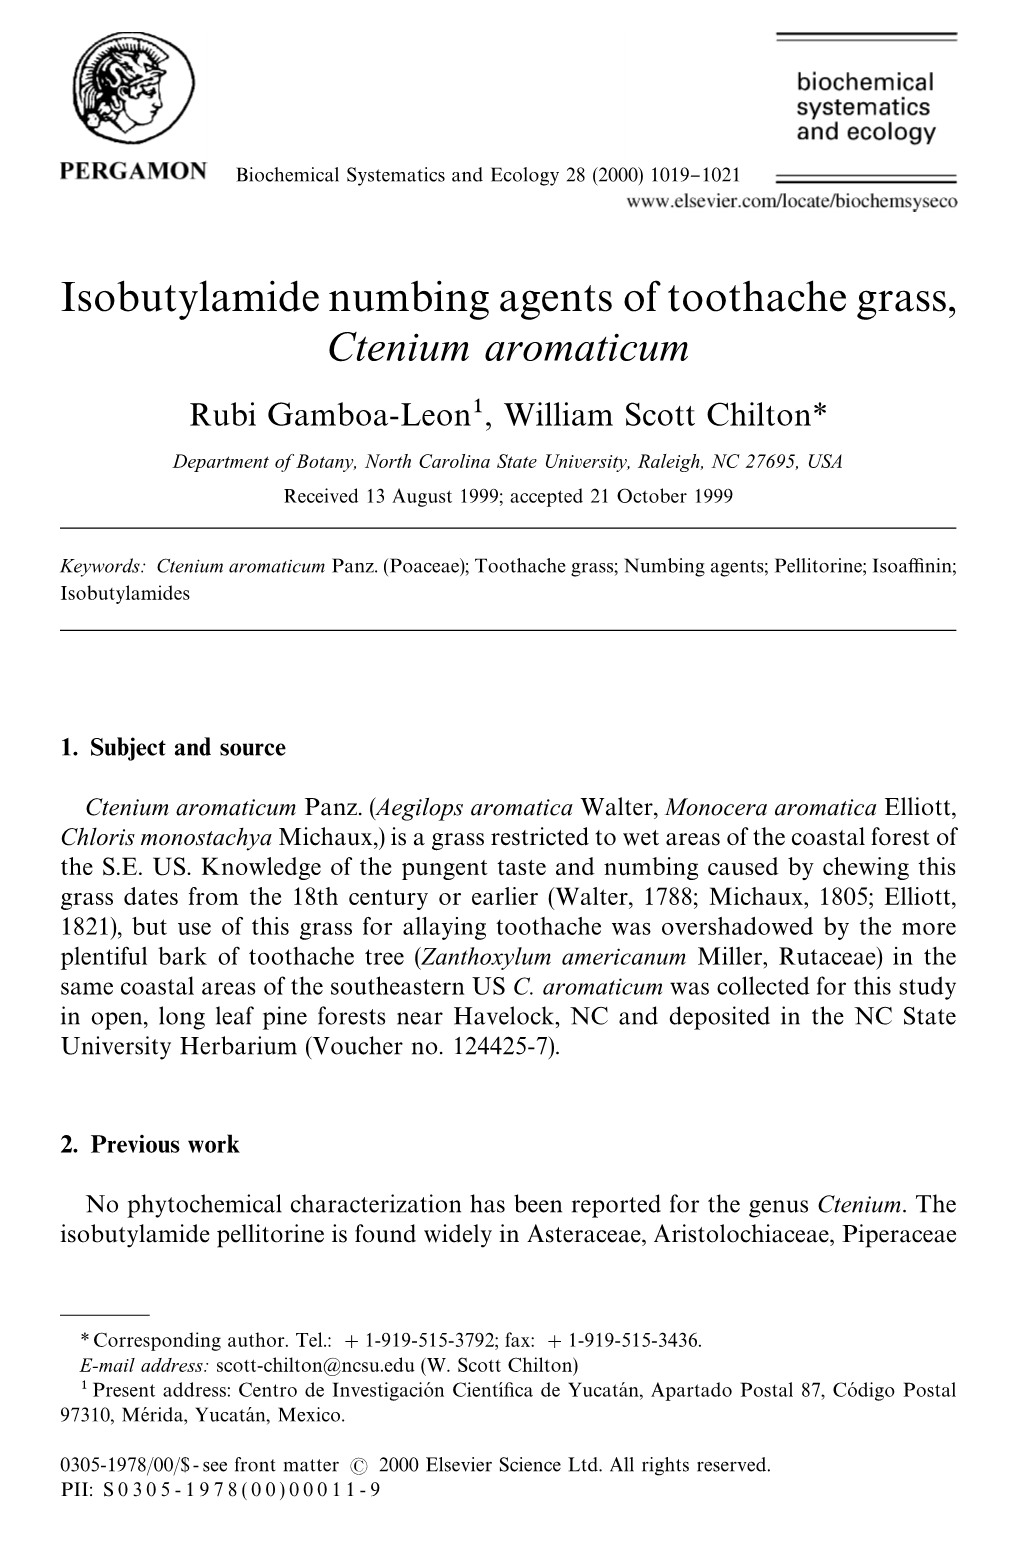 Isobutylamide Numbing Agents of Toothache Grass, Ctenium Aromaticum